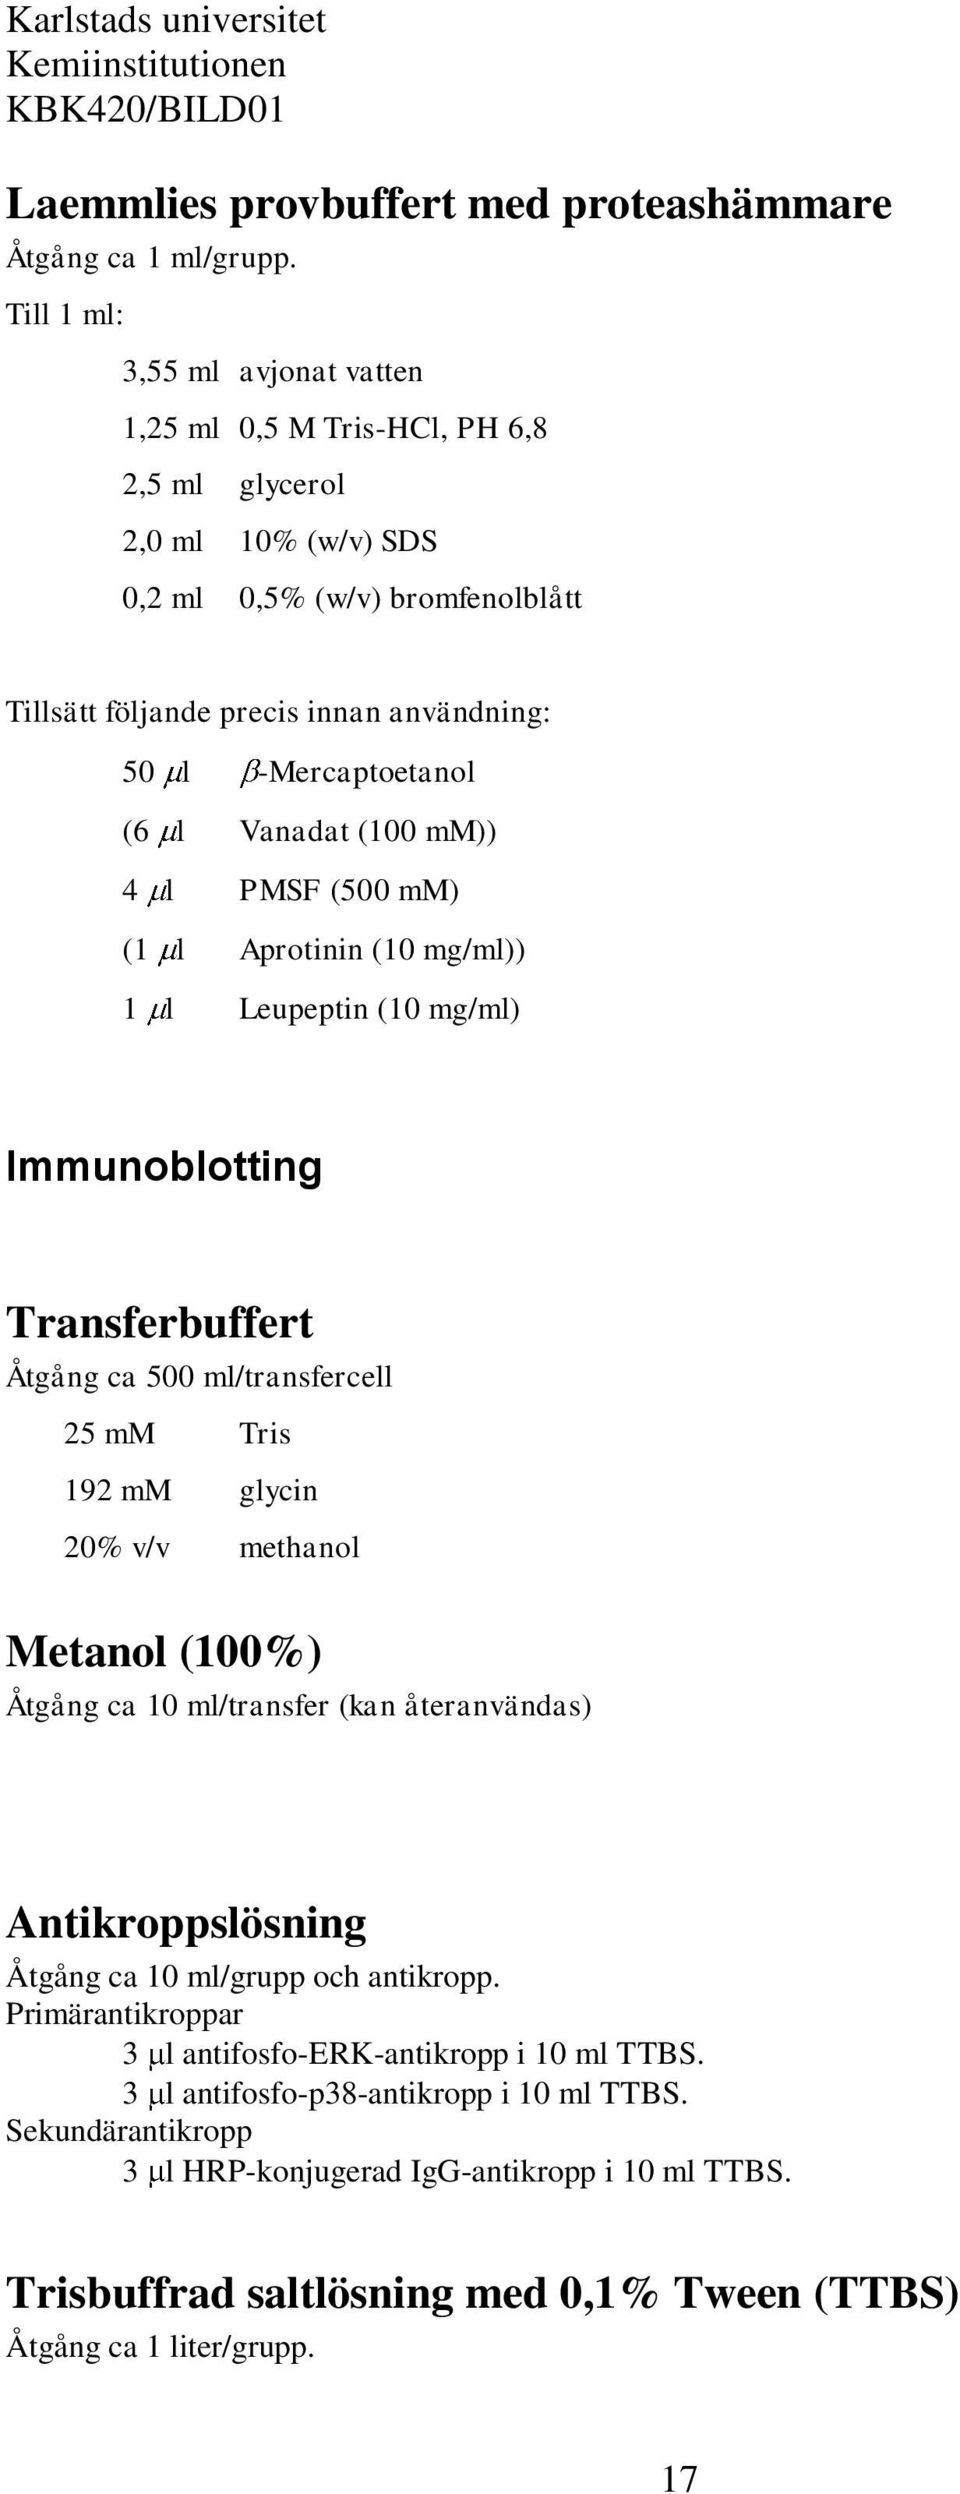 (6 l Vanadat (100 mm)) 4 l PMSF (500 mm) (1 l Aprotinin (10 mg/ml)) 1 l Leupeptin (10 mg/ml) Immunoblotting Transferbuffert Åtgång ca 500 ml/transfercell 25 mm Tris 192 mm glycin 20% v/v methanol